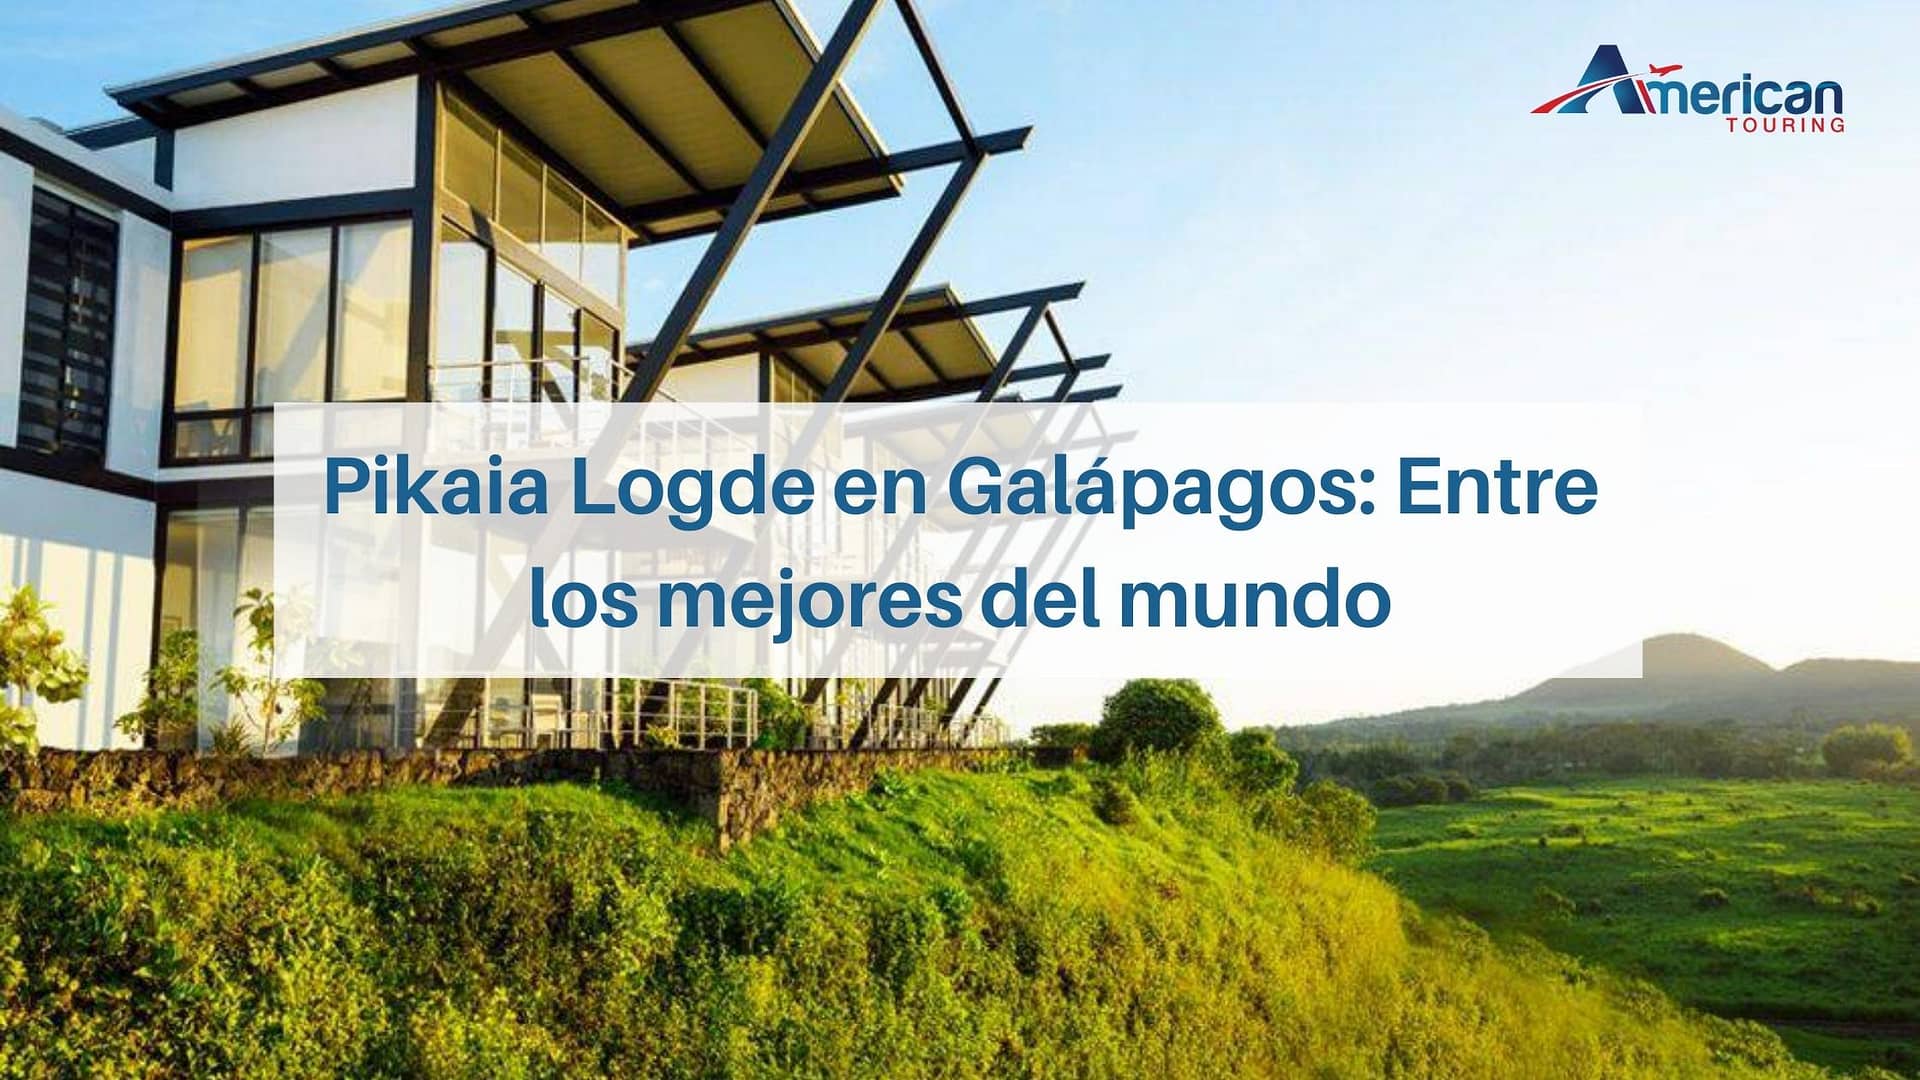 Pikaia Lodge en Galápagos: Entre los mejores